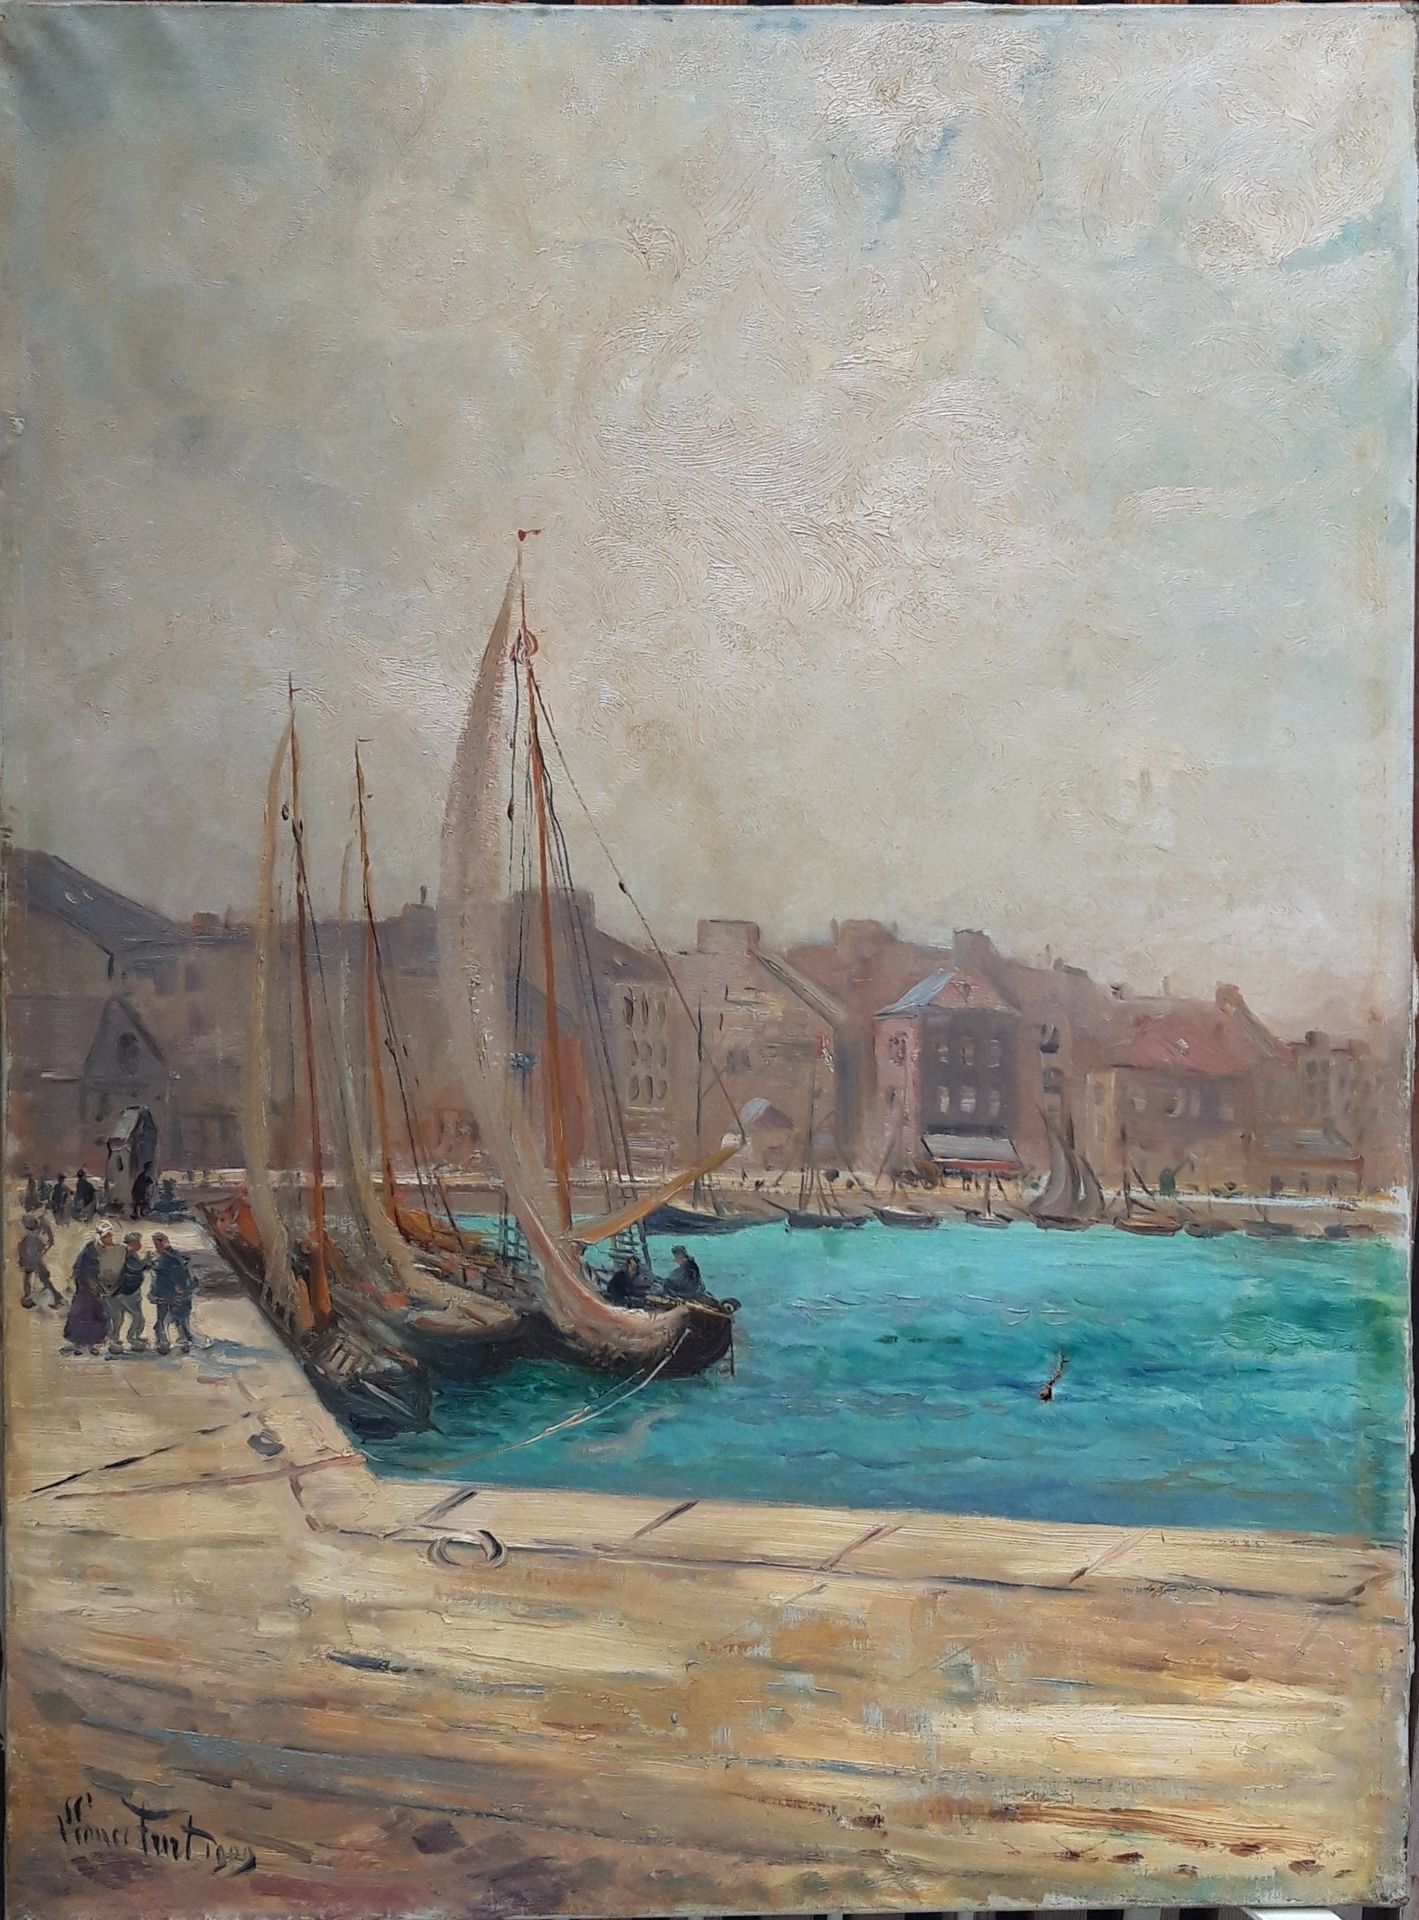 Null 
法国学校
港口的帆船

布面油画

左下方有签名

81 x 60厘米